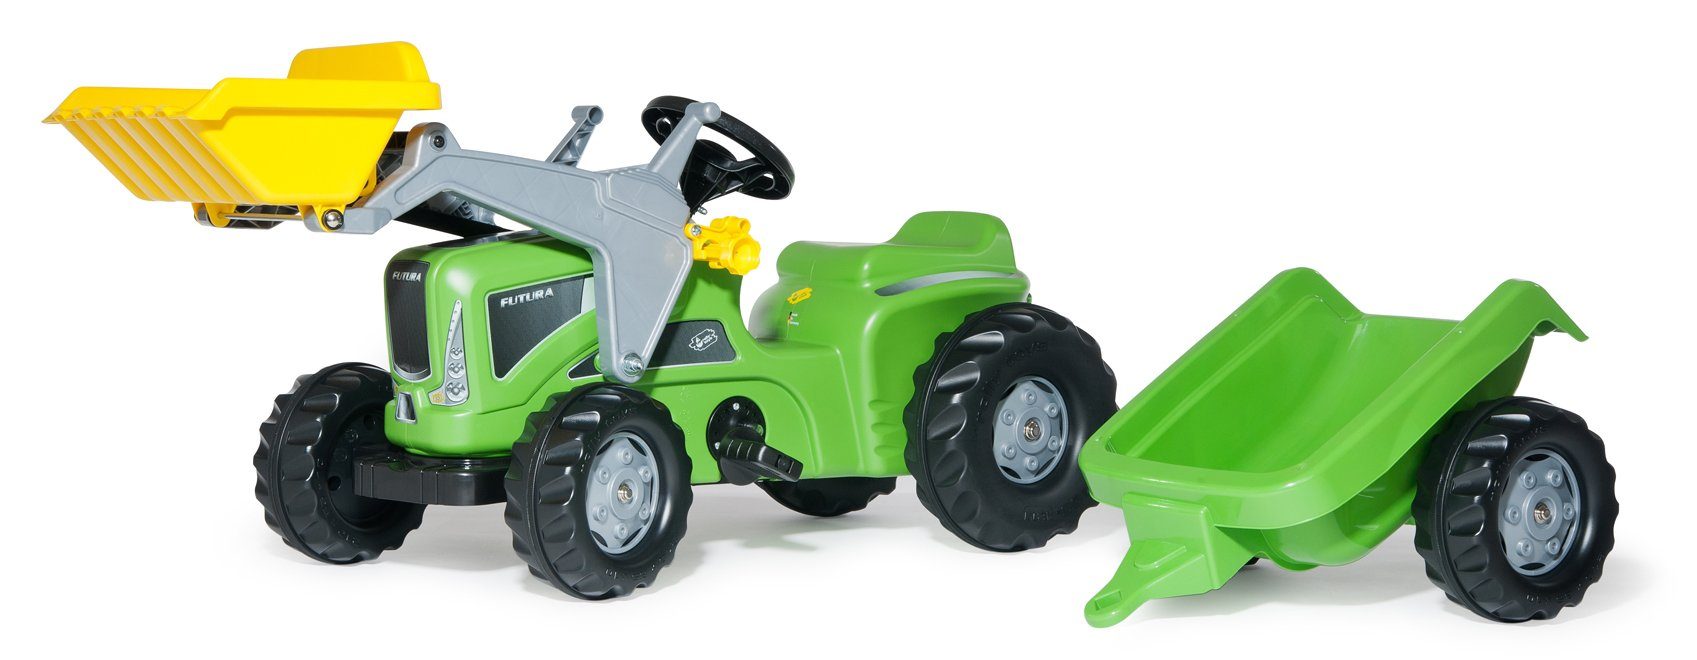 630035 Anhänger Traktor Lader toys® rolly Futura incl. und Rolly Toys Tretfahrzeug